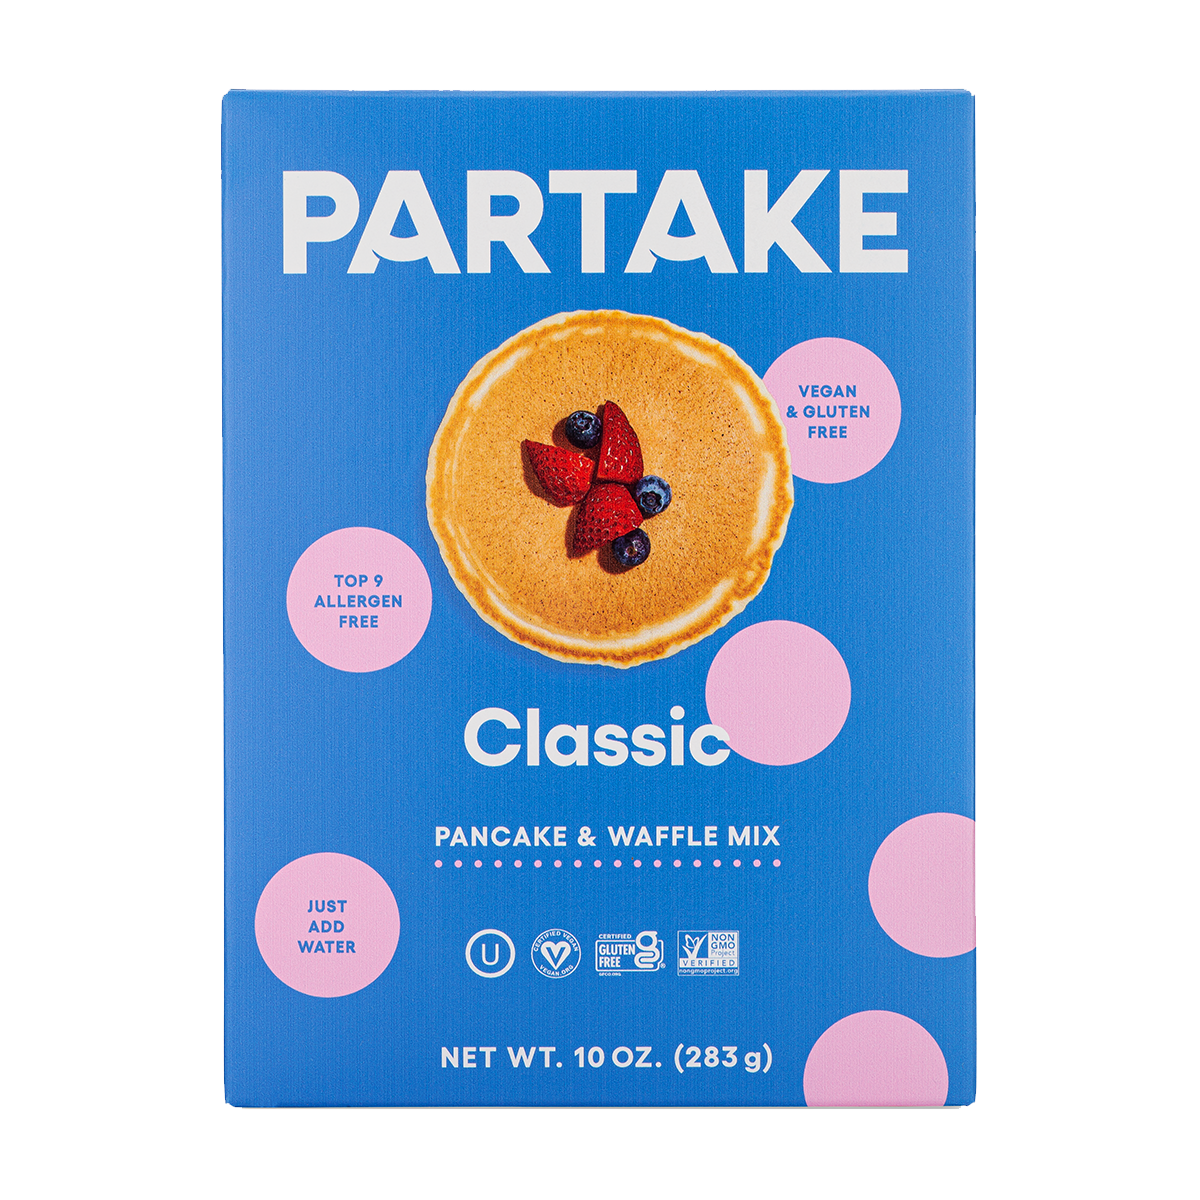 Classic Pancake & Waffle Mix